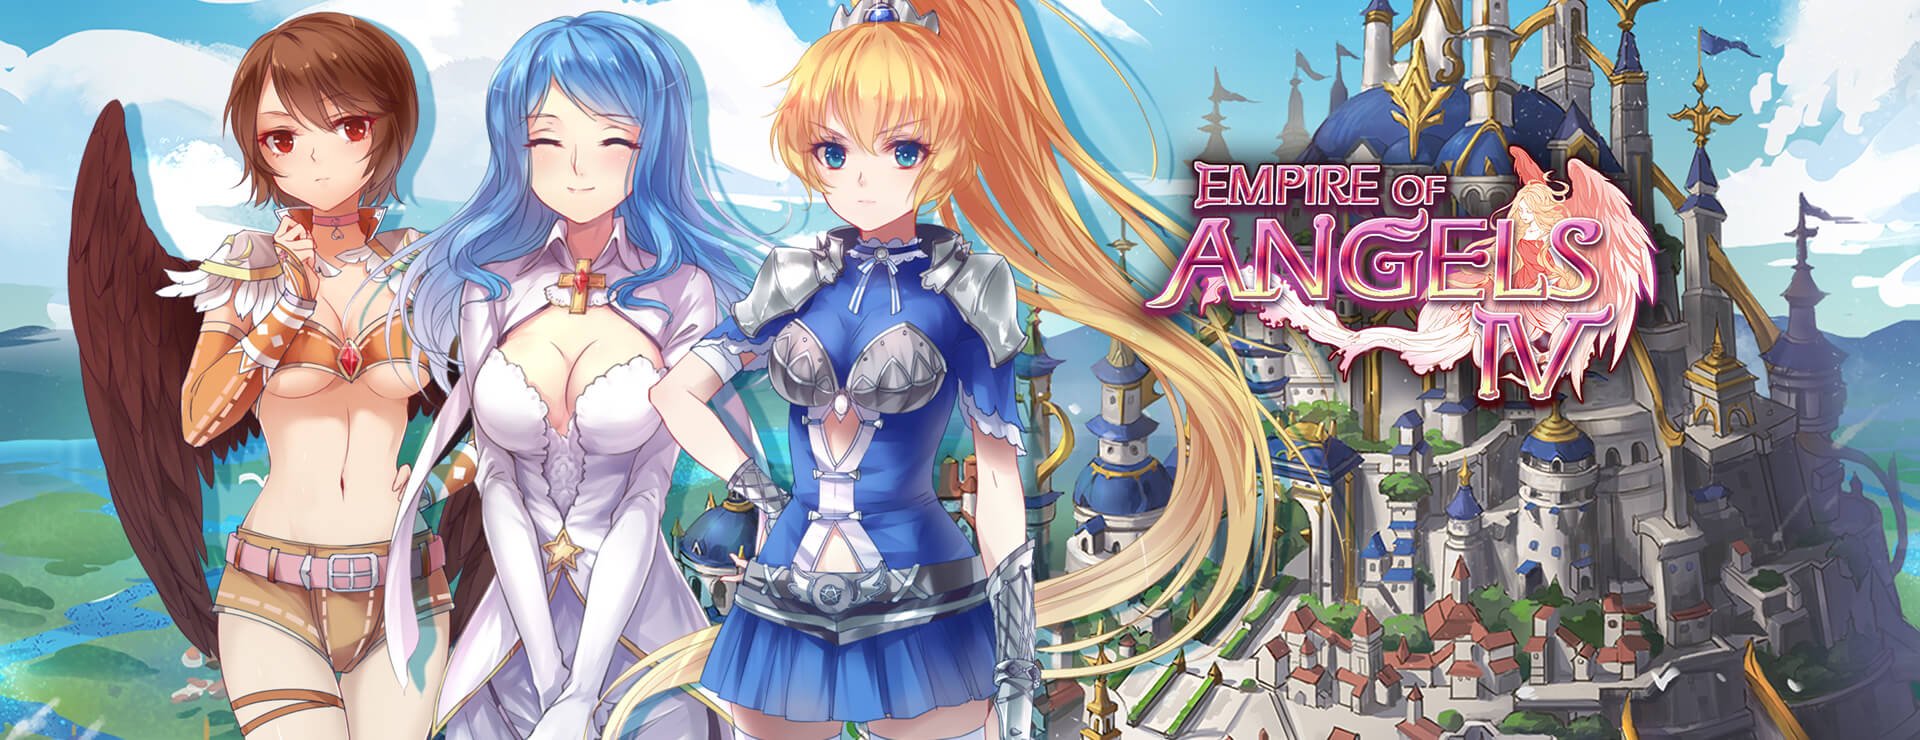 Empire of Angels IV - Aventura Acción Juego